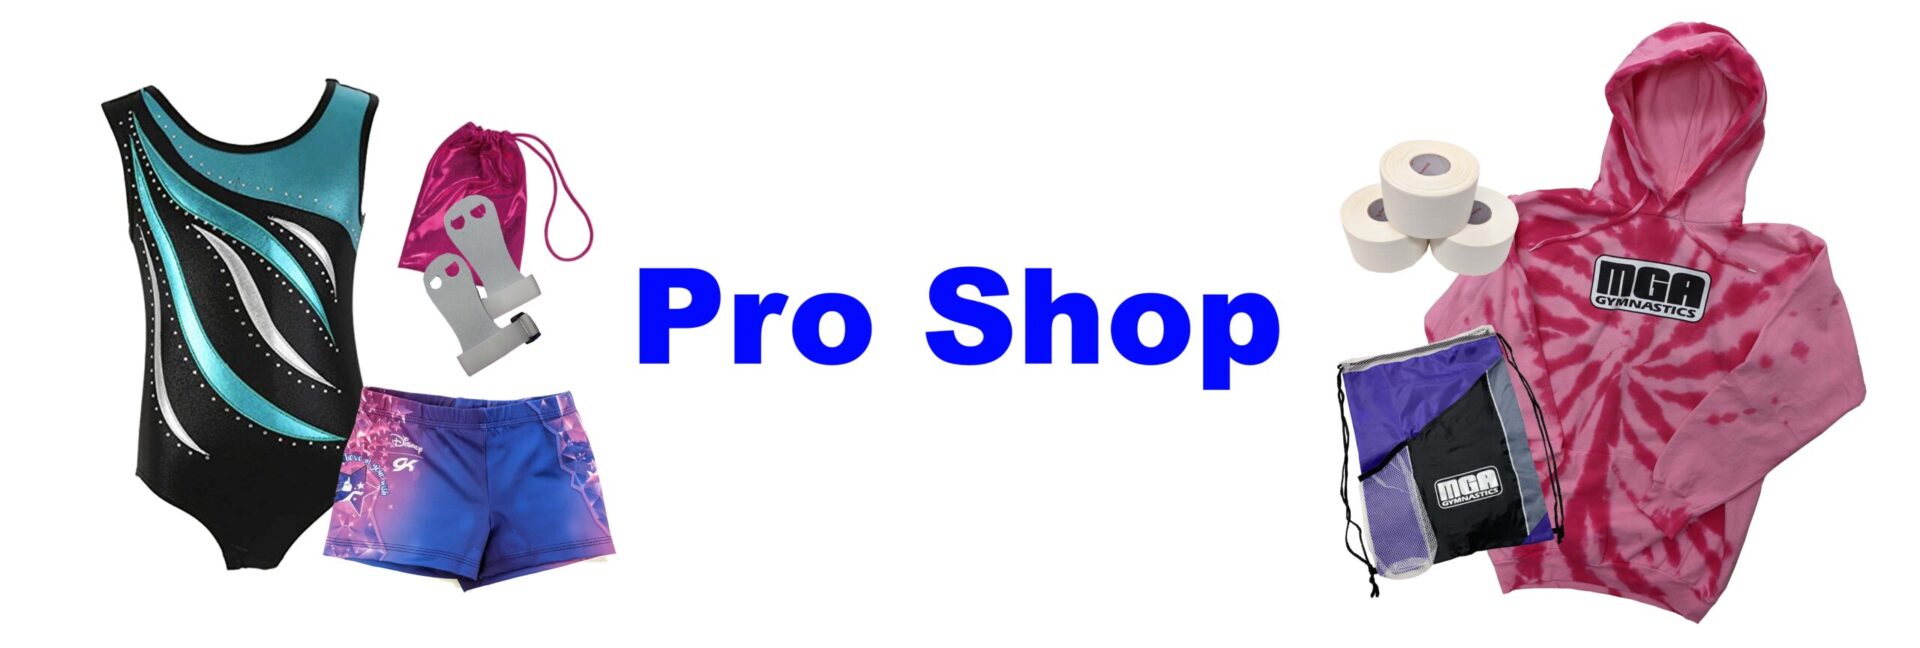 Pro Shop copy